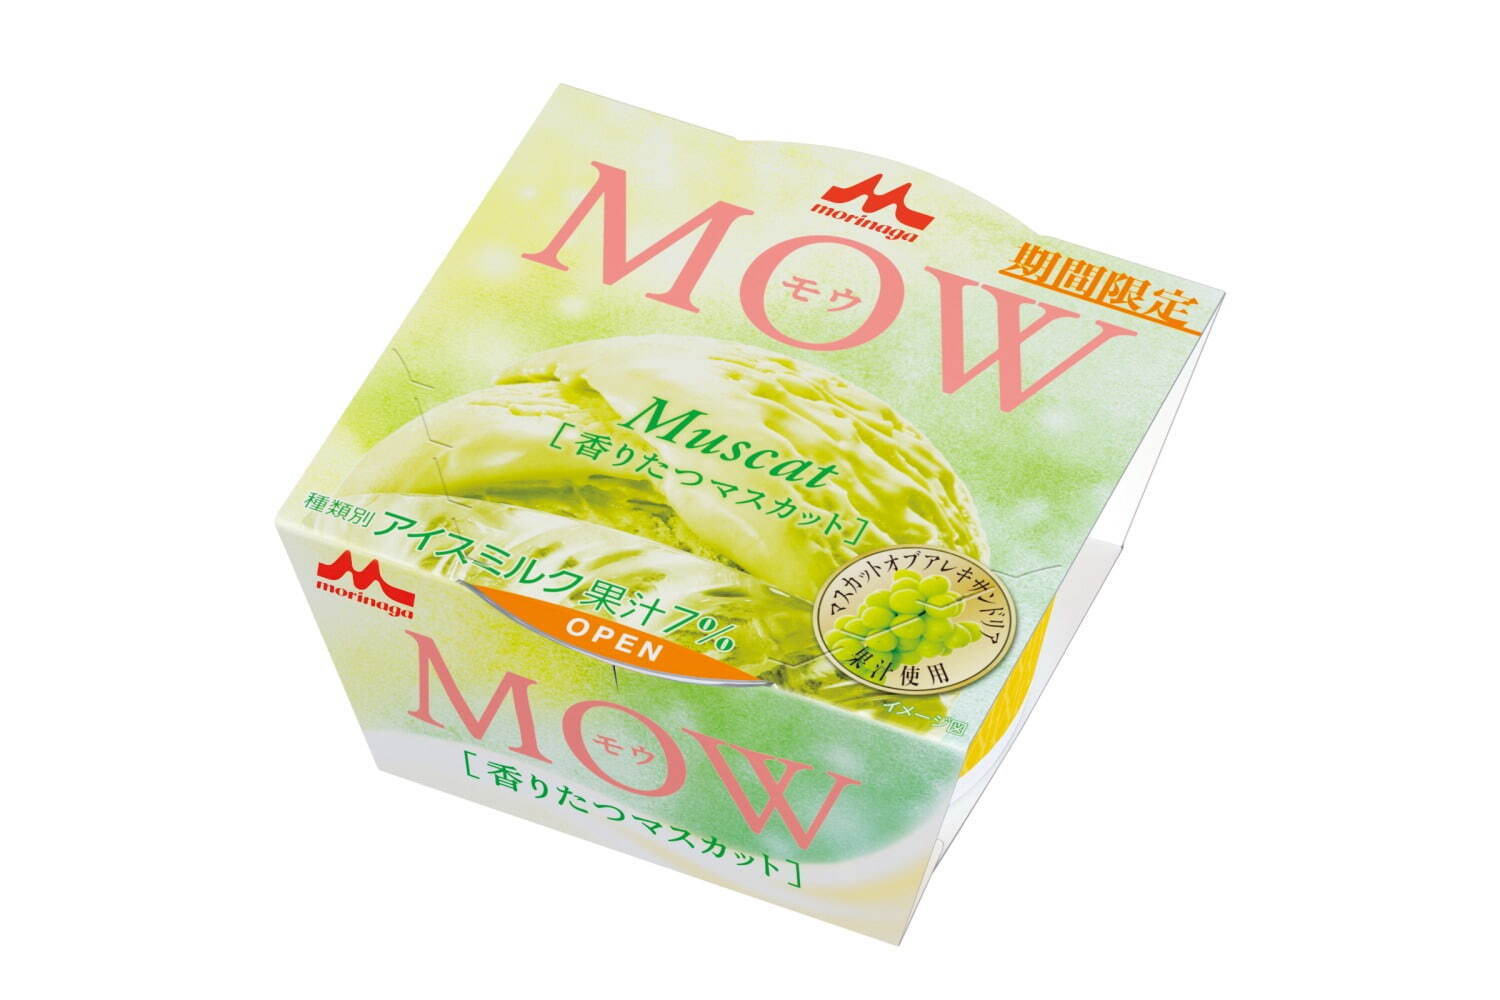 「モウ(MOW) 香りたつマスカット」173円